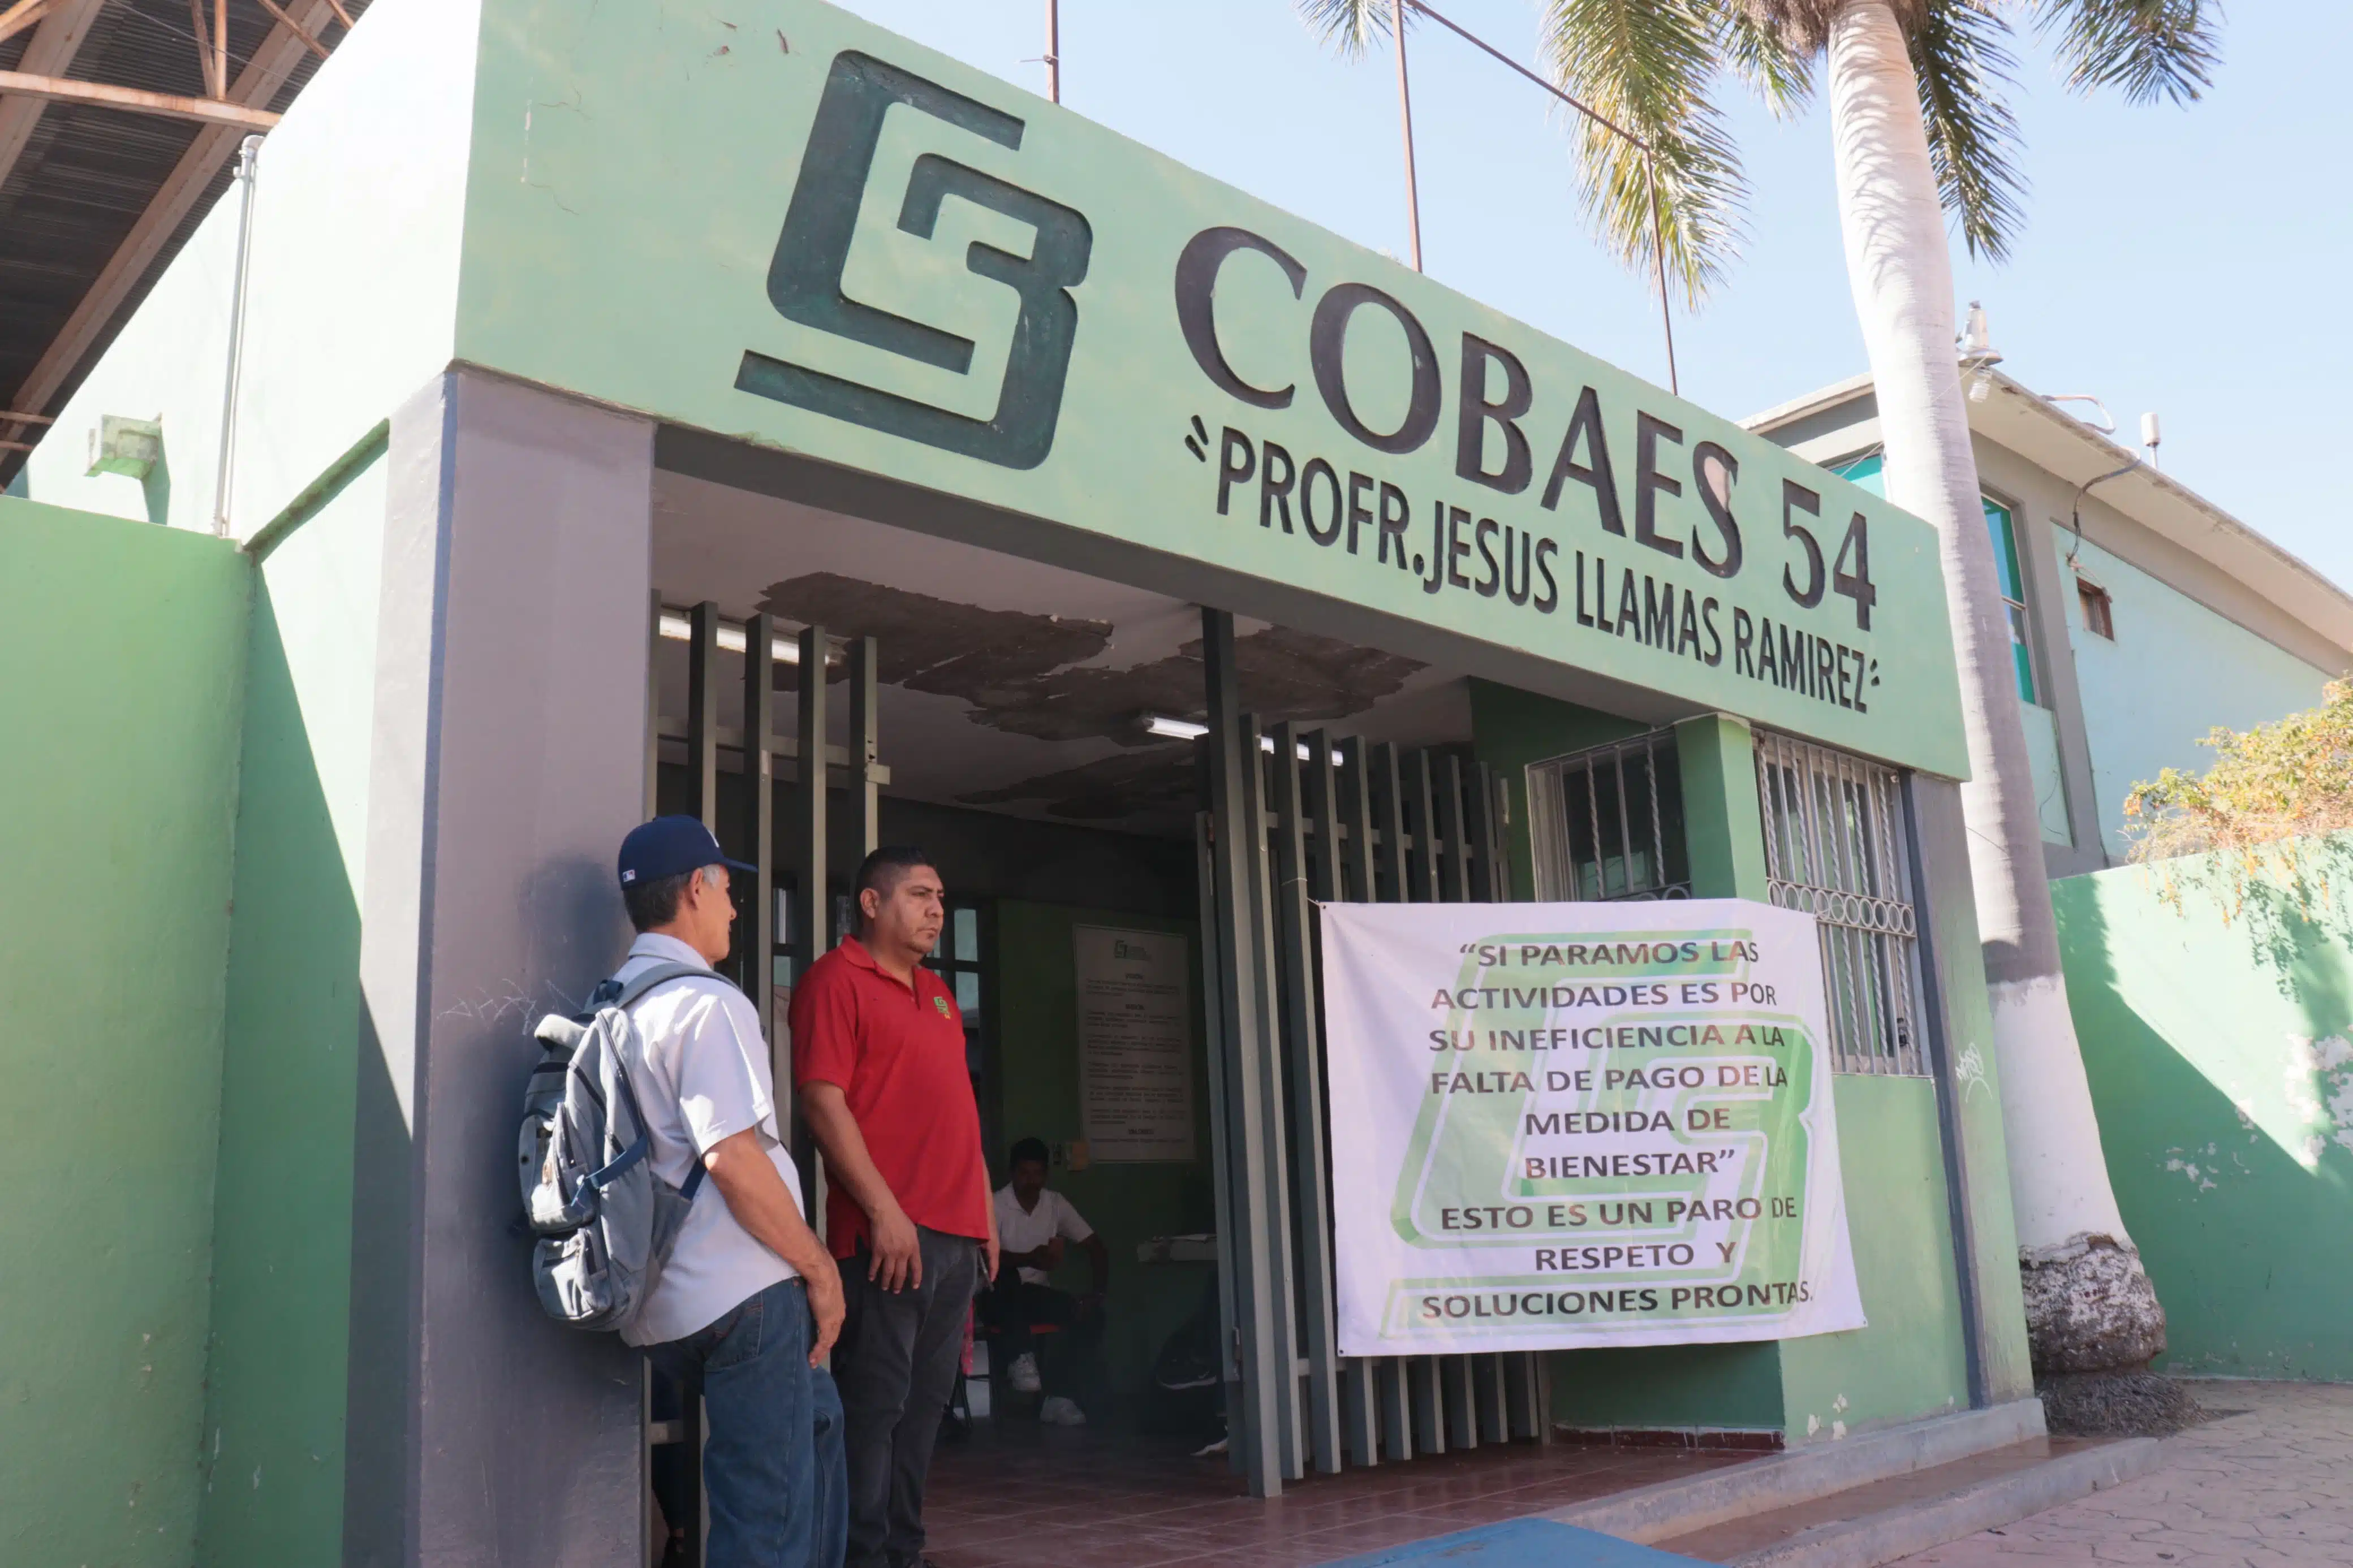 Pancarta de protesta afuera del Cobaes 54 en Los Mochis